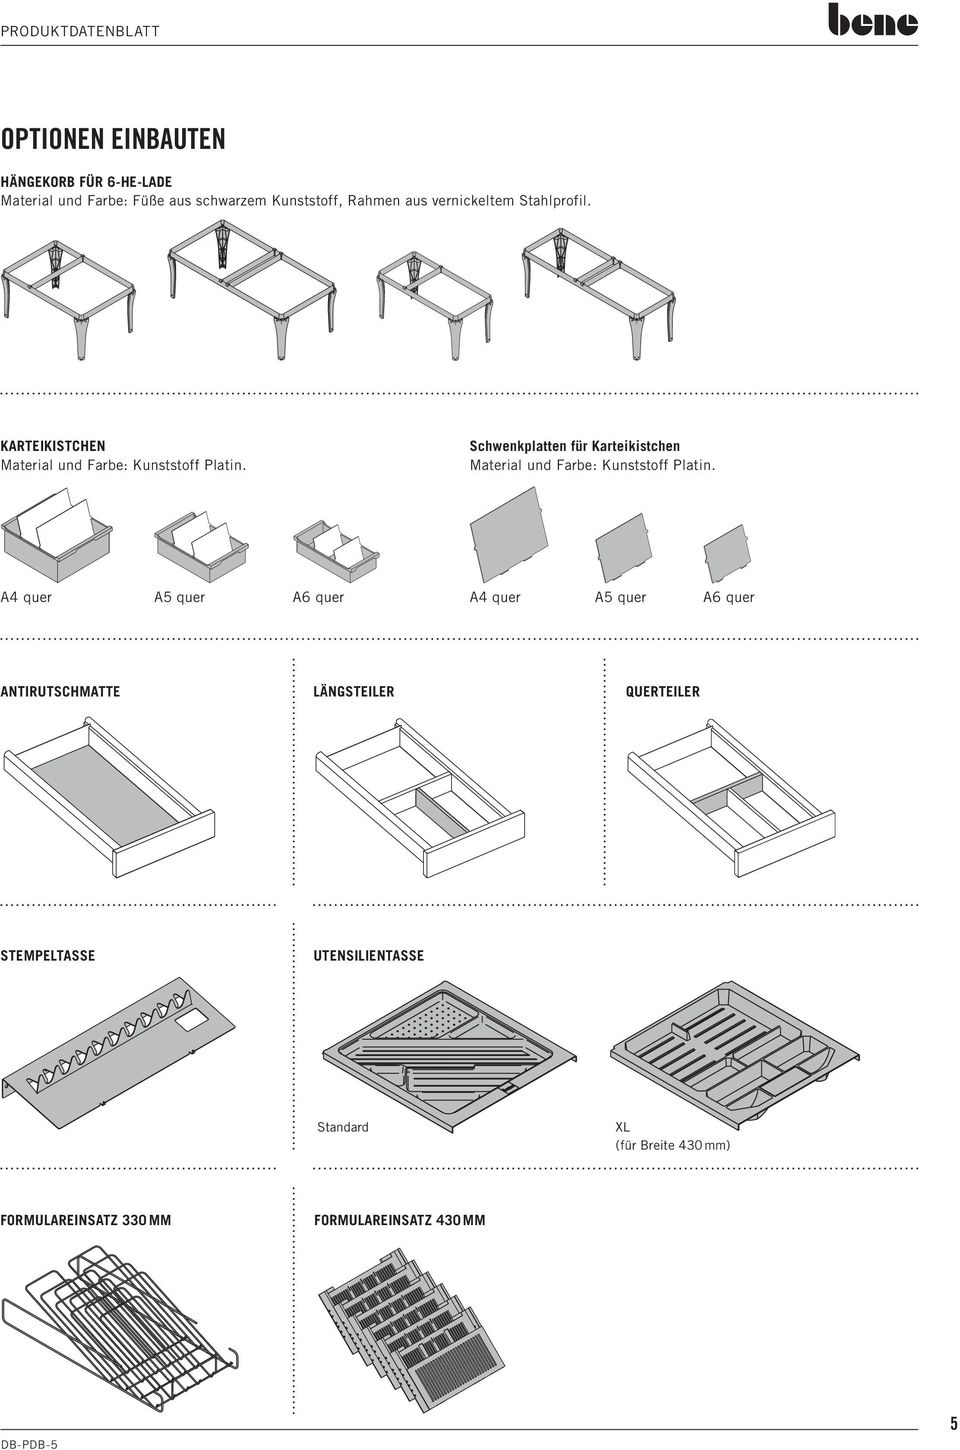 Schwenkplatten für Karteikistchen Material und Farbe: Kunststoff Platin.